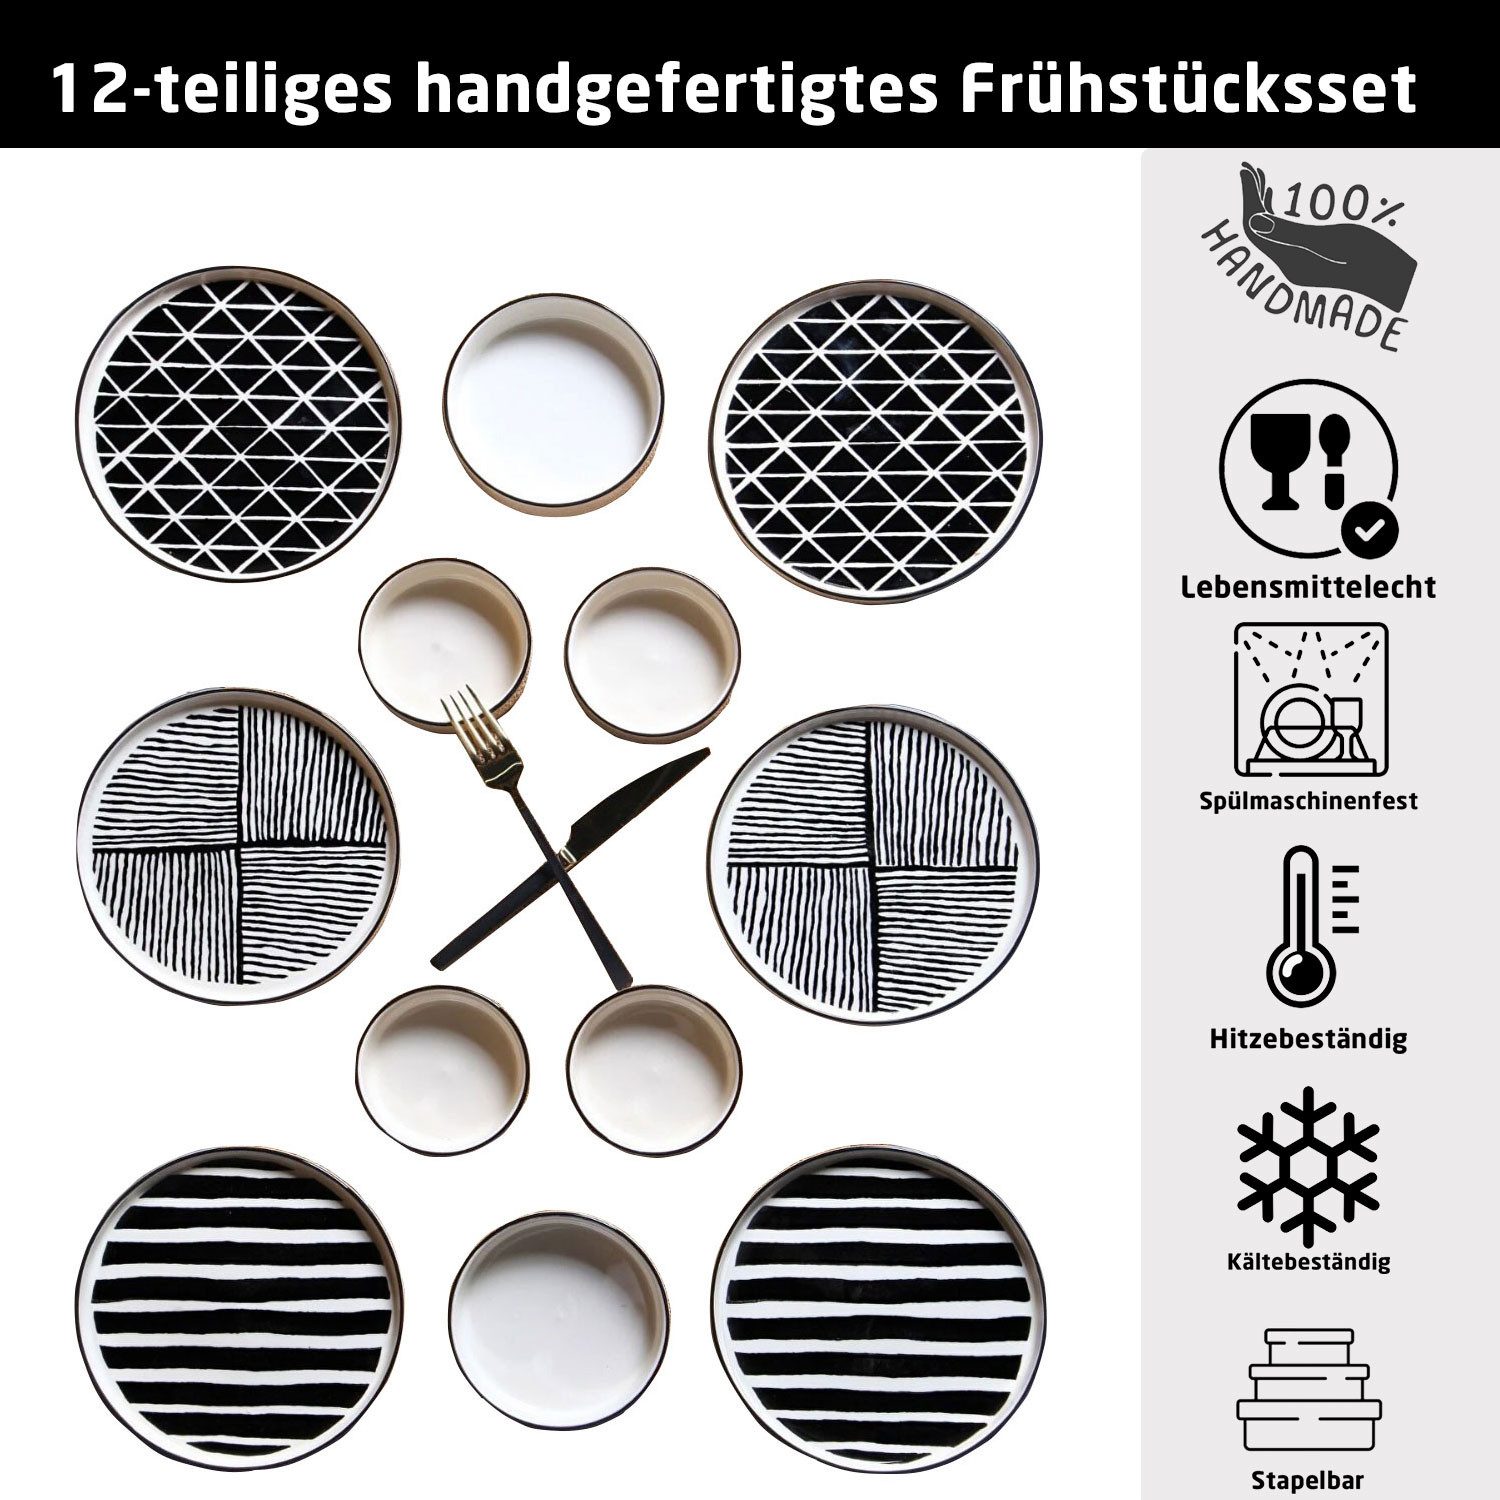 Jungengel Tafelservice Modern Frühstückset Skandinavien Black Teller Set Geschirr Service, 100% Handgefertigt